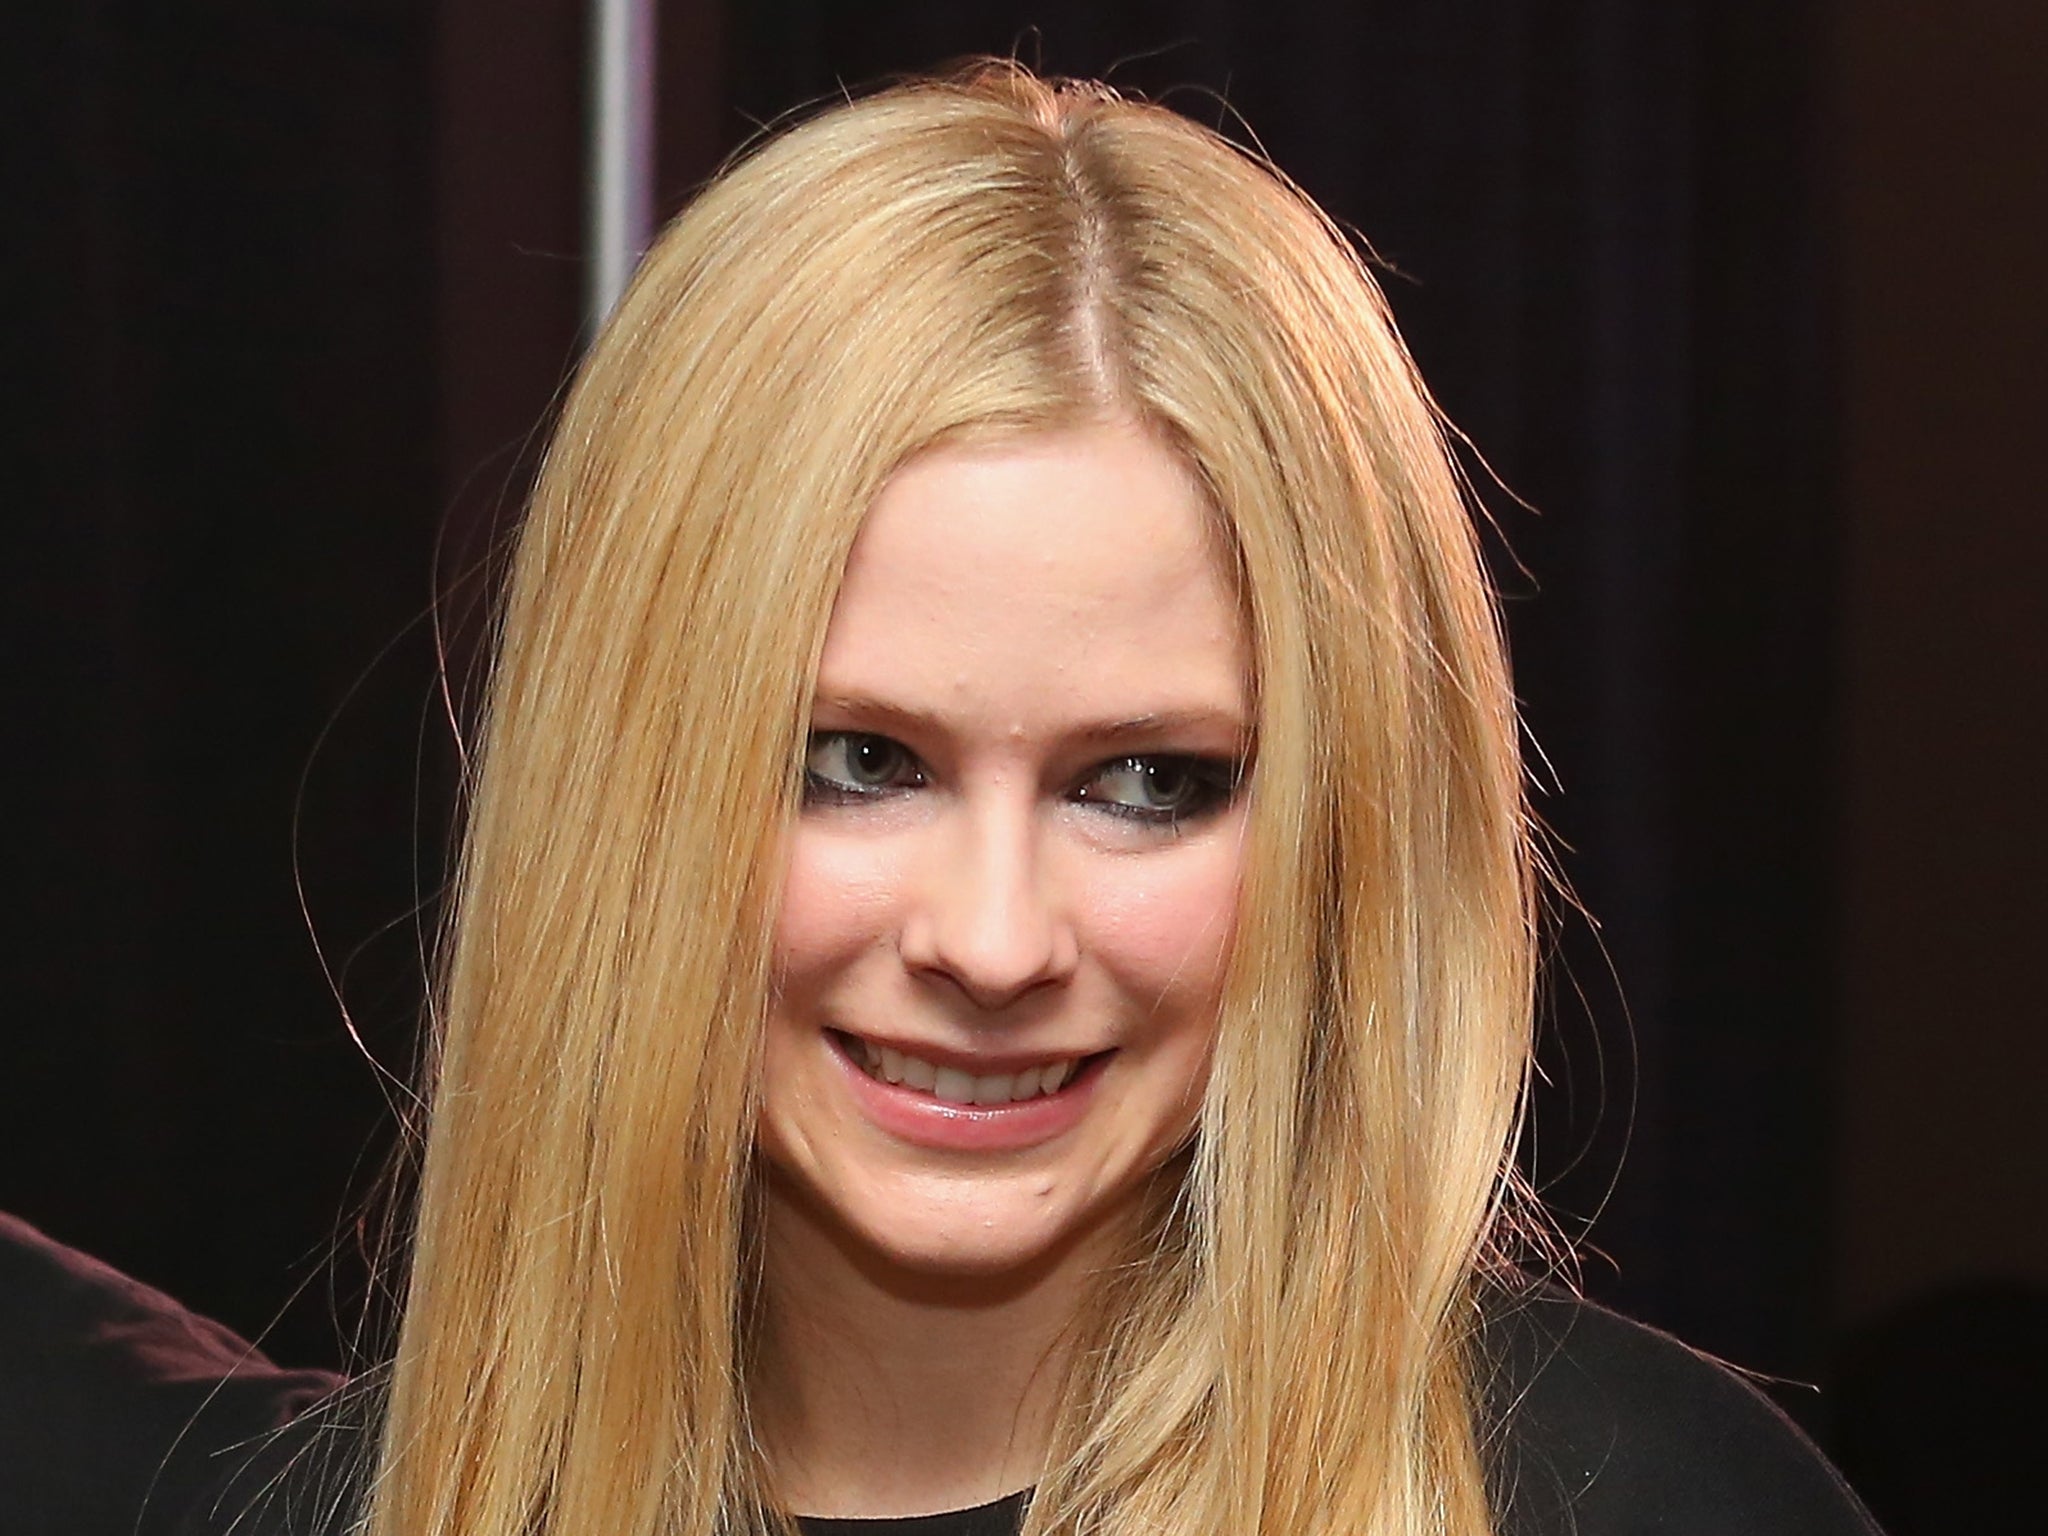 Canadian pop singer Avril Lavigne has quashes rehab rumours